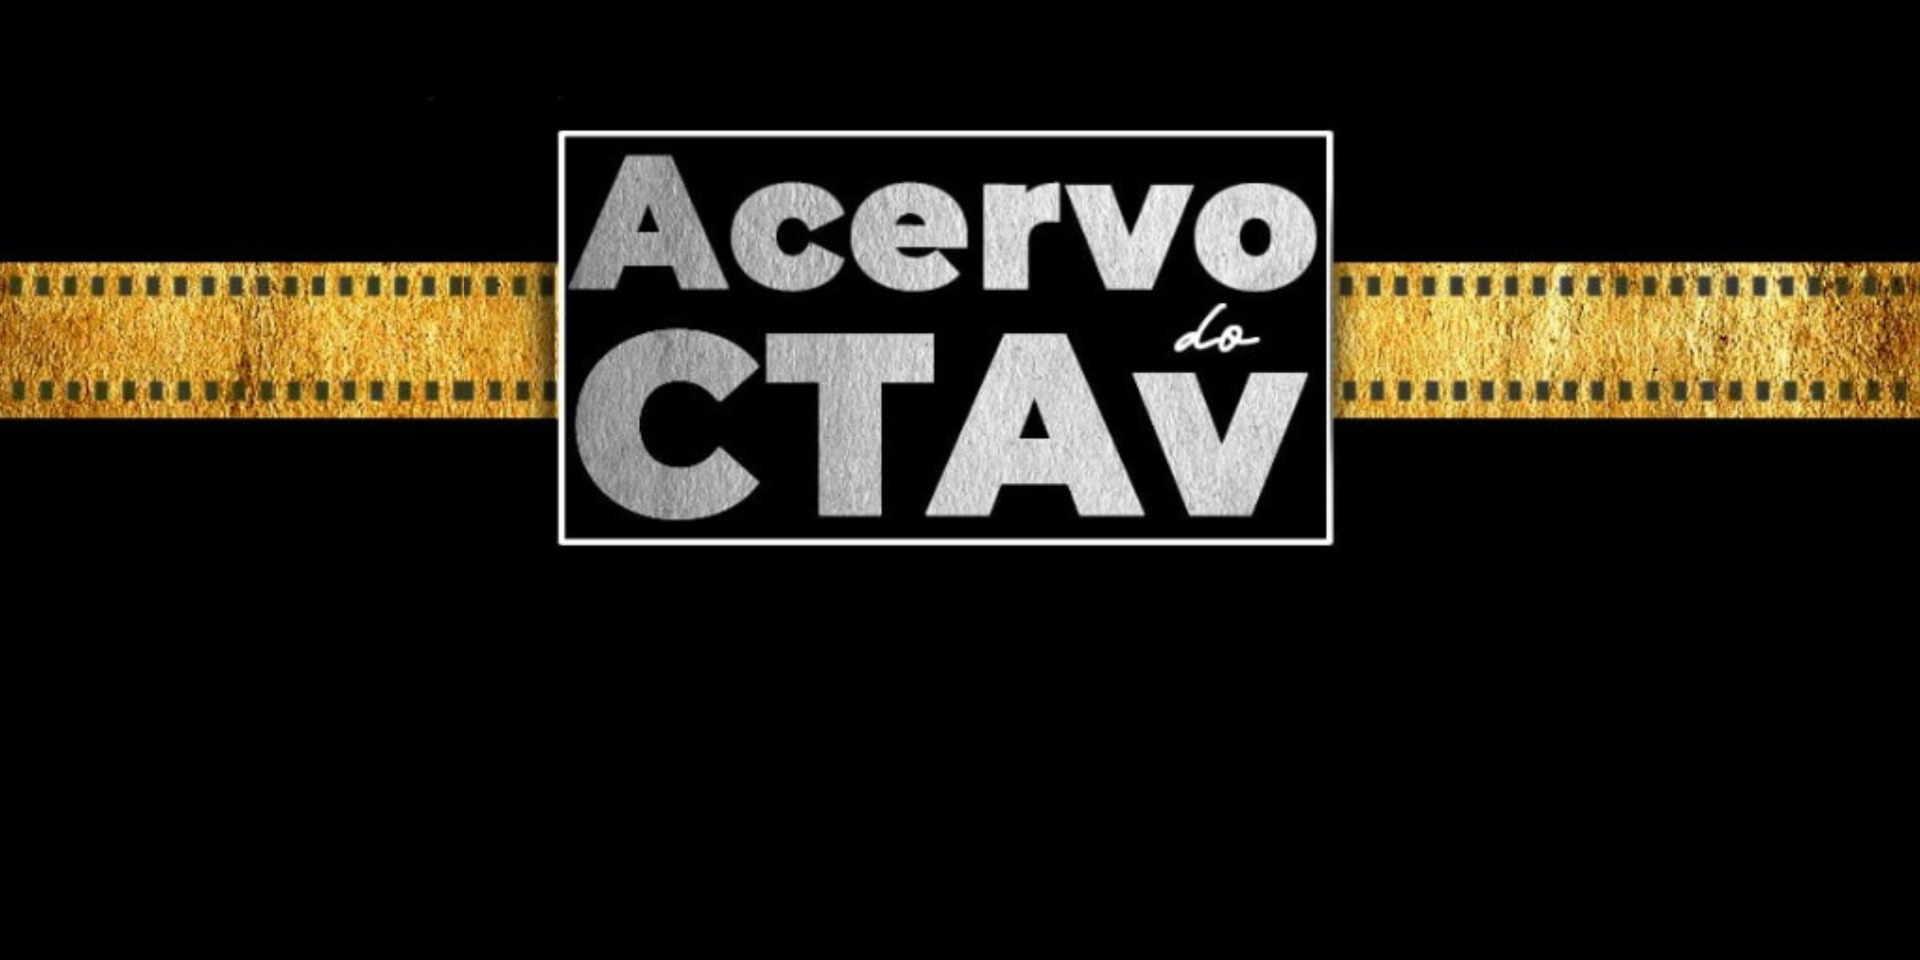 Semanalmente, a equipe do CTAv seleciona um título do acervo patrimonial da instituição e disponibiliza o conteúdo na íntegra de forma on-line em caráter permanente no canal do CTAv no Youtube.